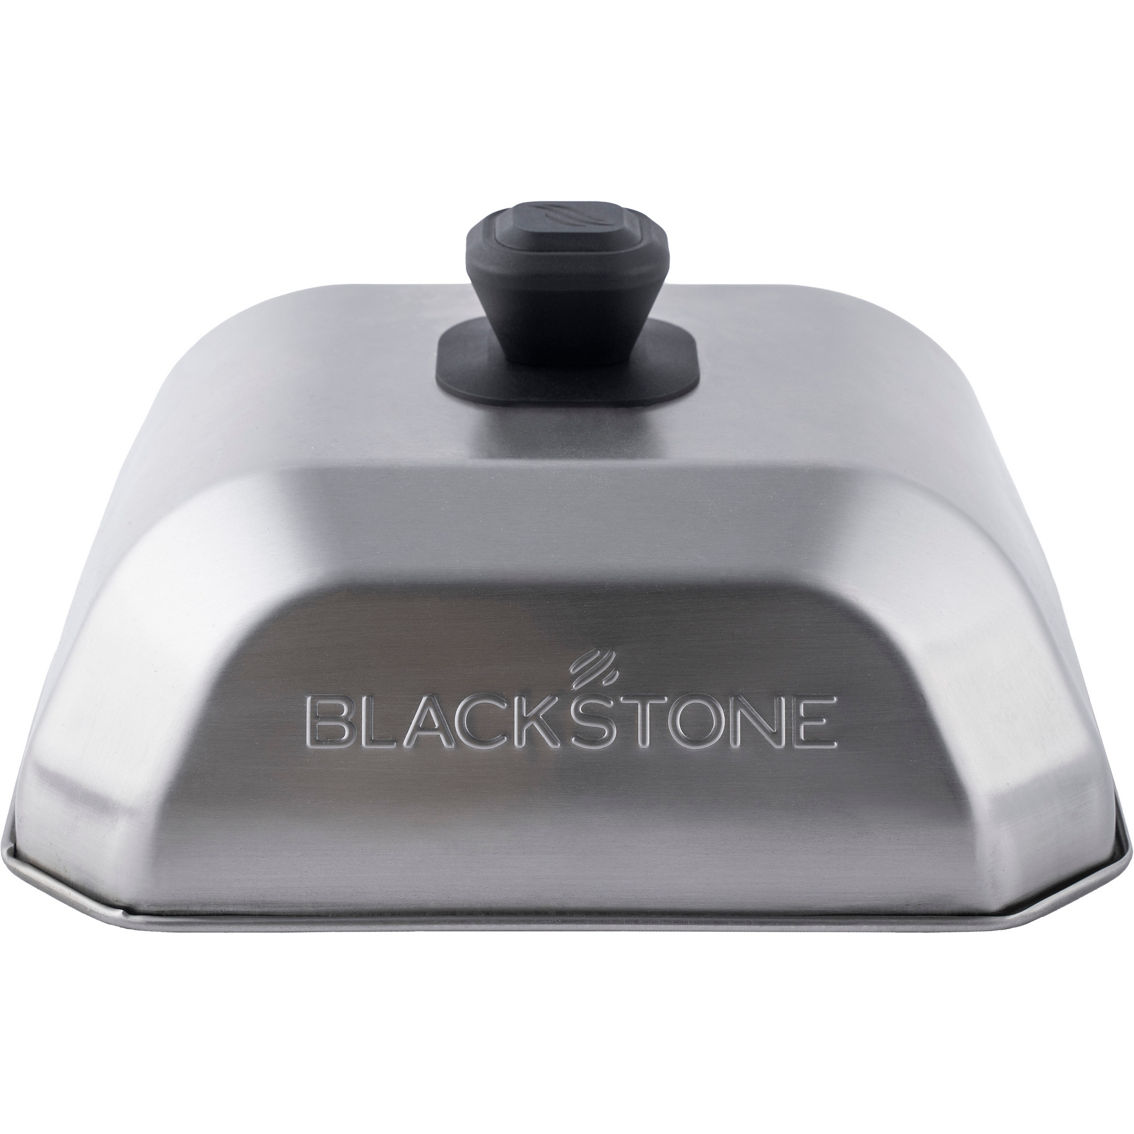 Blackstone Medium Square Basting Cover - Image 2 of 5